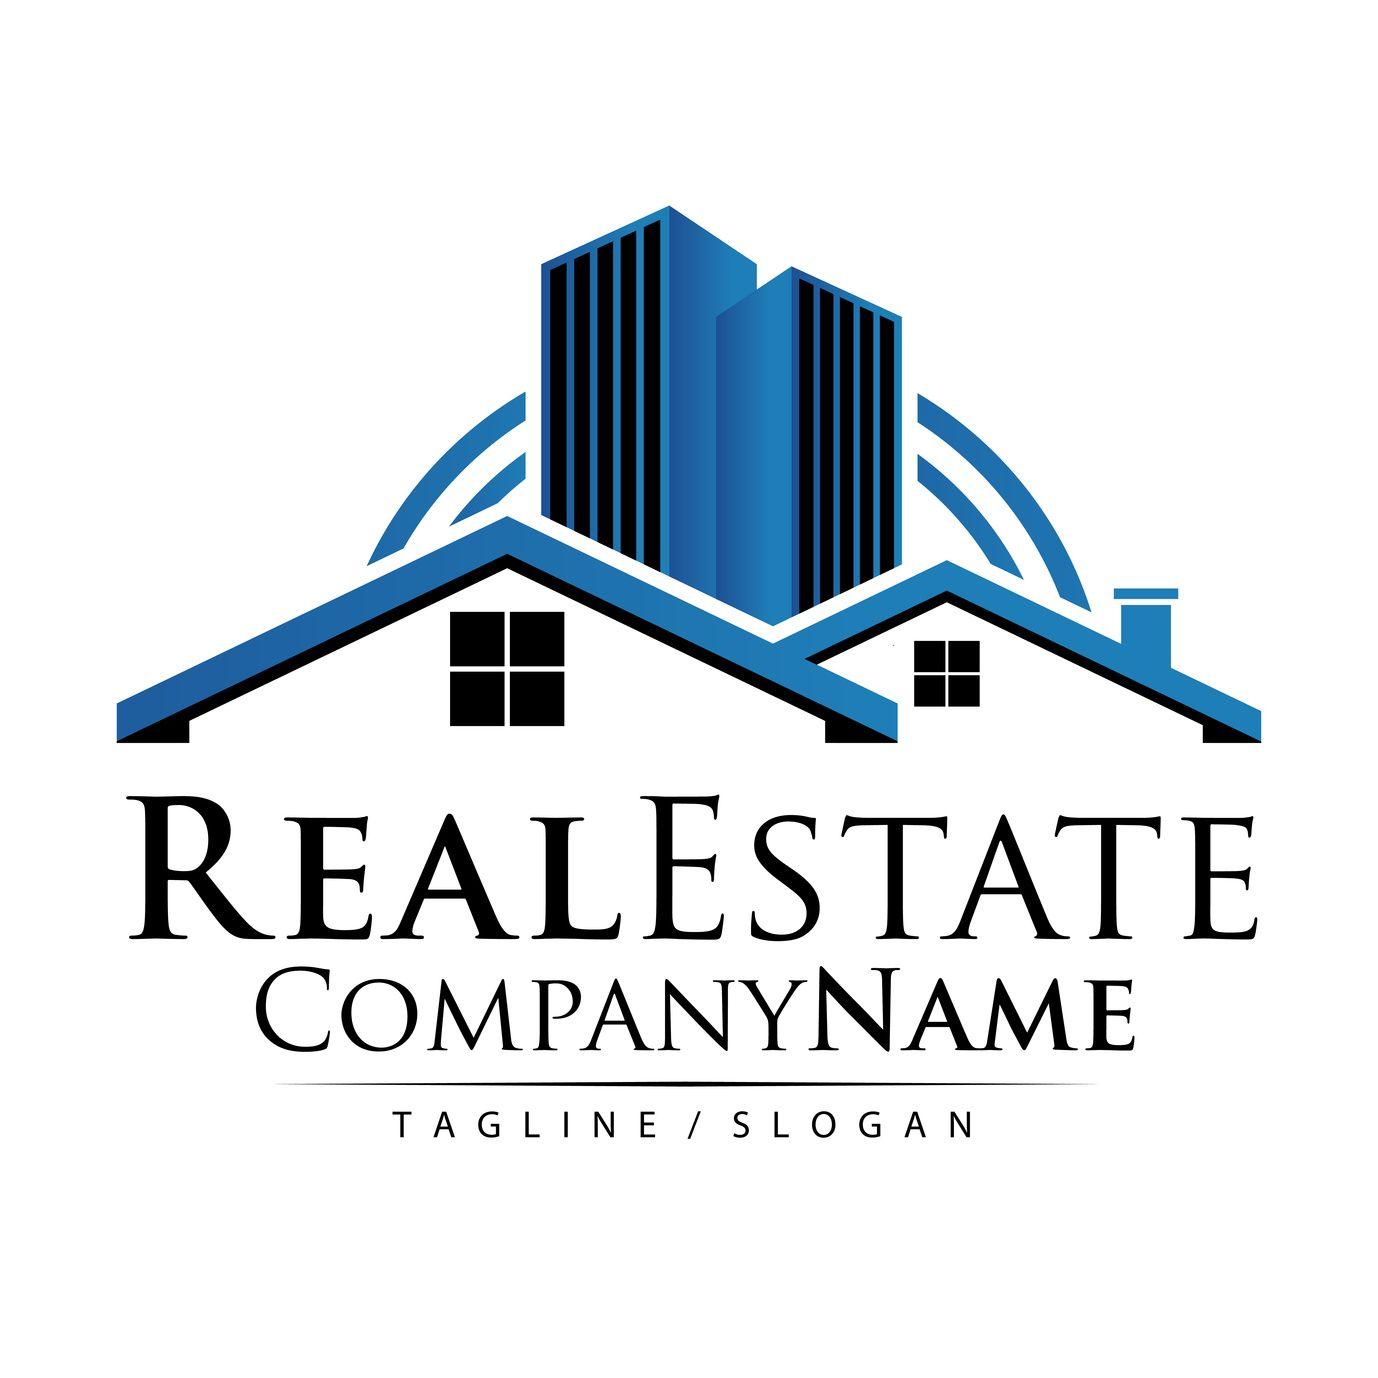 Real Estate Logo - Professional Fonts for Real Estate Logo Design • Online Logo